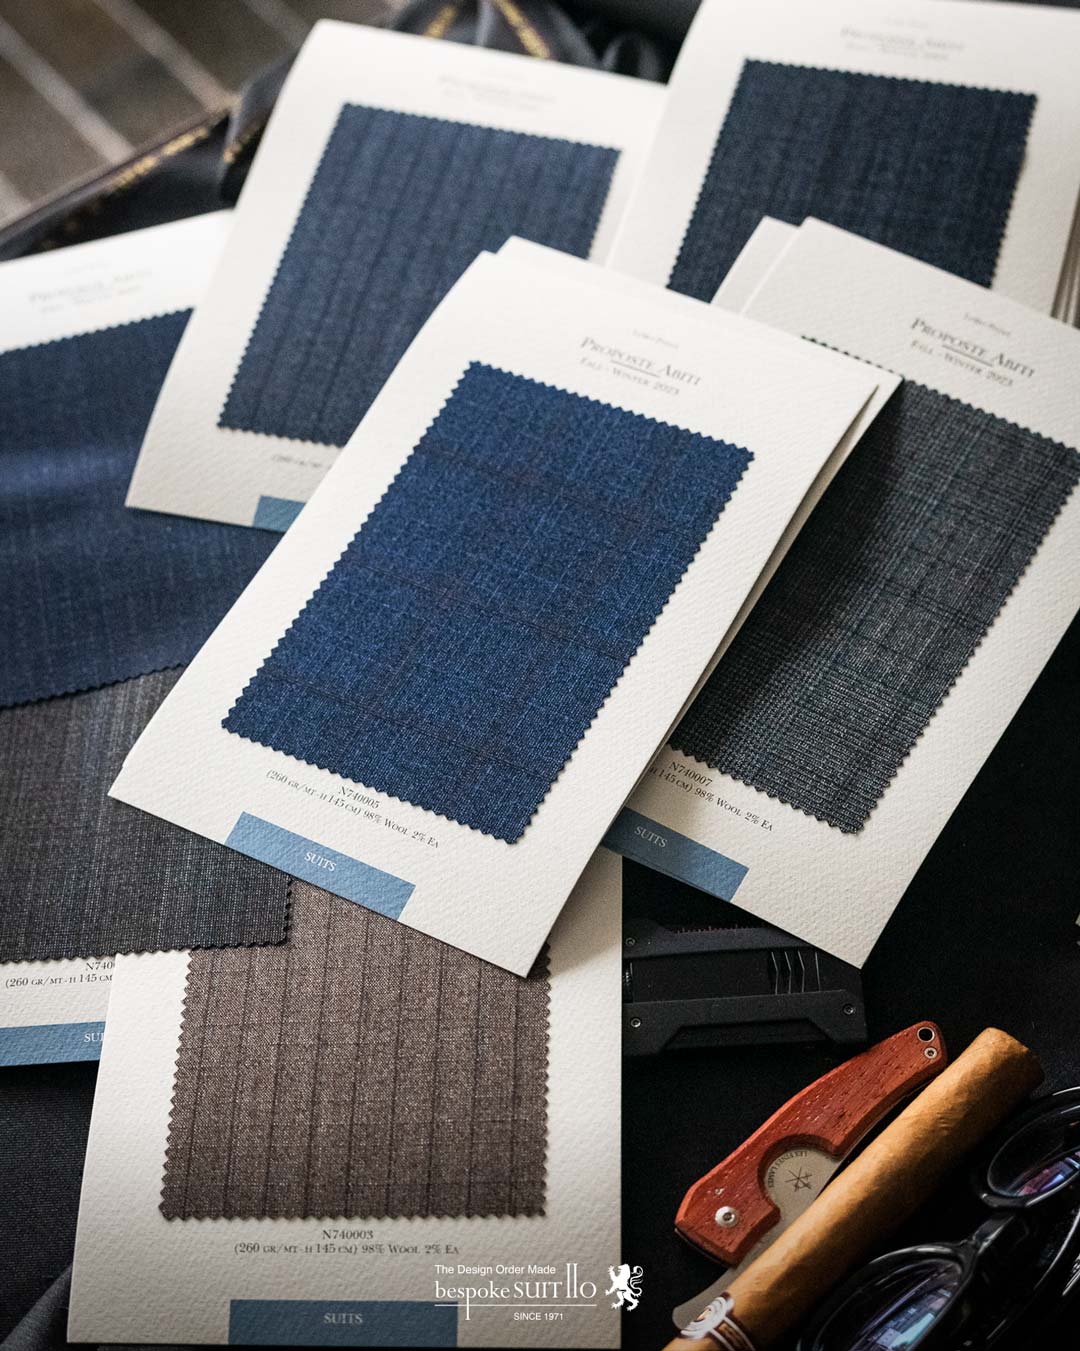  ロロピアーナは、1924年にピエトロ・ロロ・ピアーナがイタリアのクアローナで創業した最高級カシミヤと最高級ウールを取り扱う服地のトップメーカーです 。糸の原料となる繊維の生産から糸を作るための紡績、そして織り上がった布地をスーツやコートなどに仕立てる製品開発まで、一貫して自社で行っています 。 2013年には、LVMH（モエ・ヘネシー・ルイ・ヴィトン）グループが、発行済み株式の80％を取得し、買収しました。株式の残り20％は「ロロ・ピアーナ」創業一族が保持しています 2023aw秋冬新柄コレクション入荷 ,ordersuits,ドレスシャツオーダージャケット,orderJacket,オーダーベスト,oedervest,ビスポーク,,オーダーシャツ,オーダースーツ,背広,誂え,仕立,紳士,福岡,黒崎,小倉,北九州,八幡西区,ビスポークスーツ１１０,bespokeSUIT110,bespokeSUITIIO,